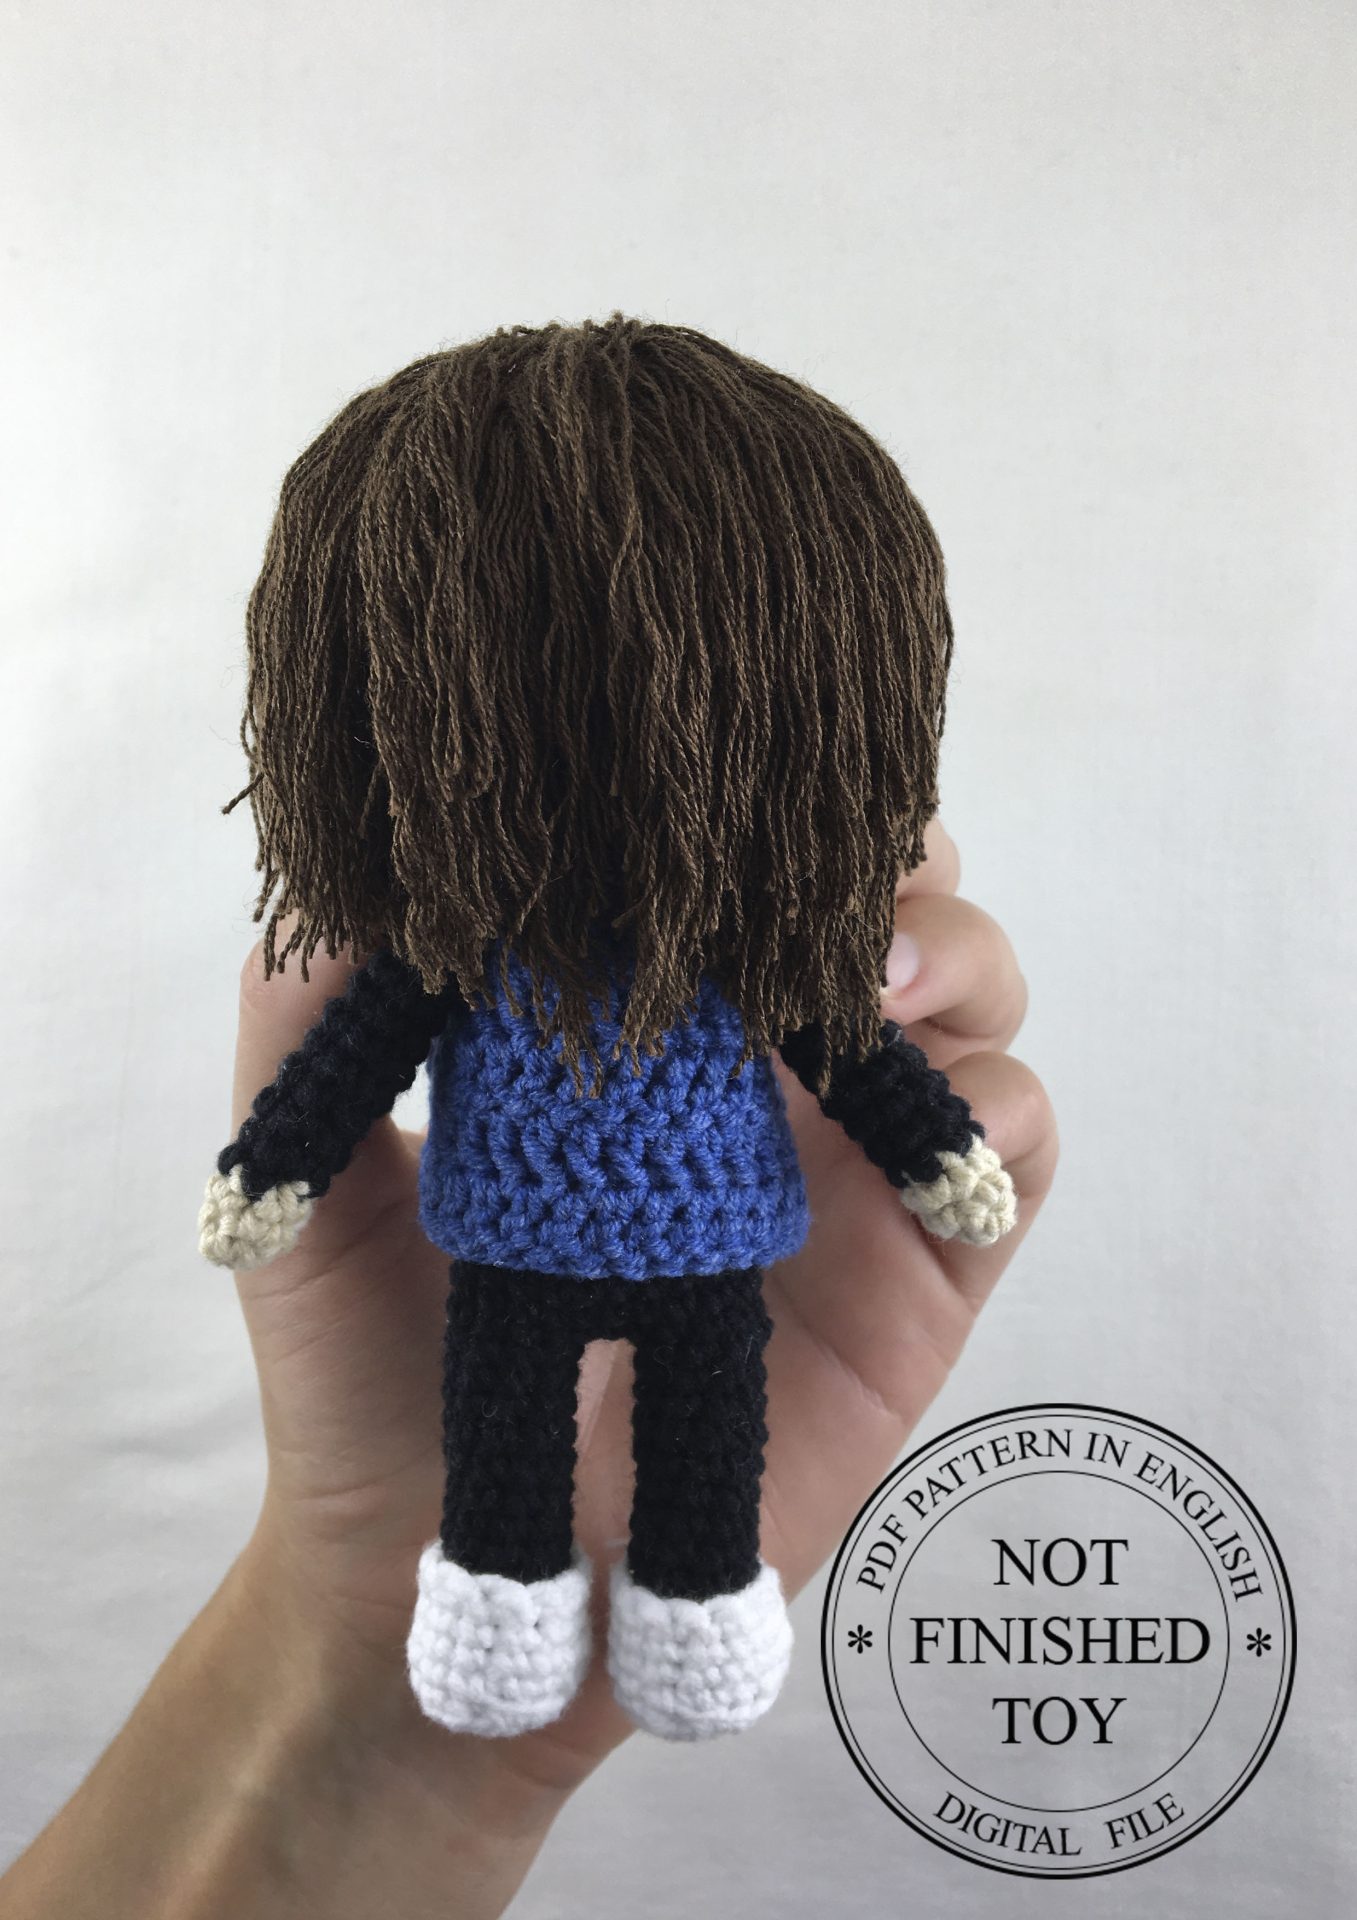 Crochet Your Own Eddie Munson (Stranger Things)